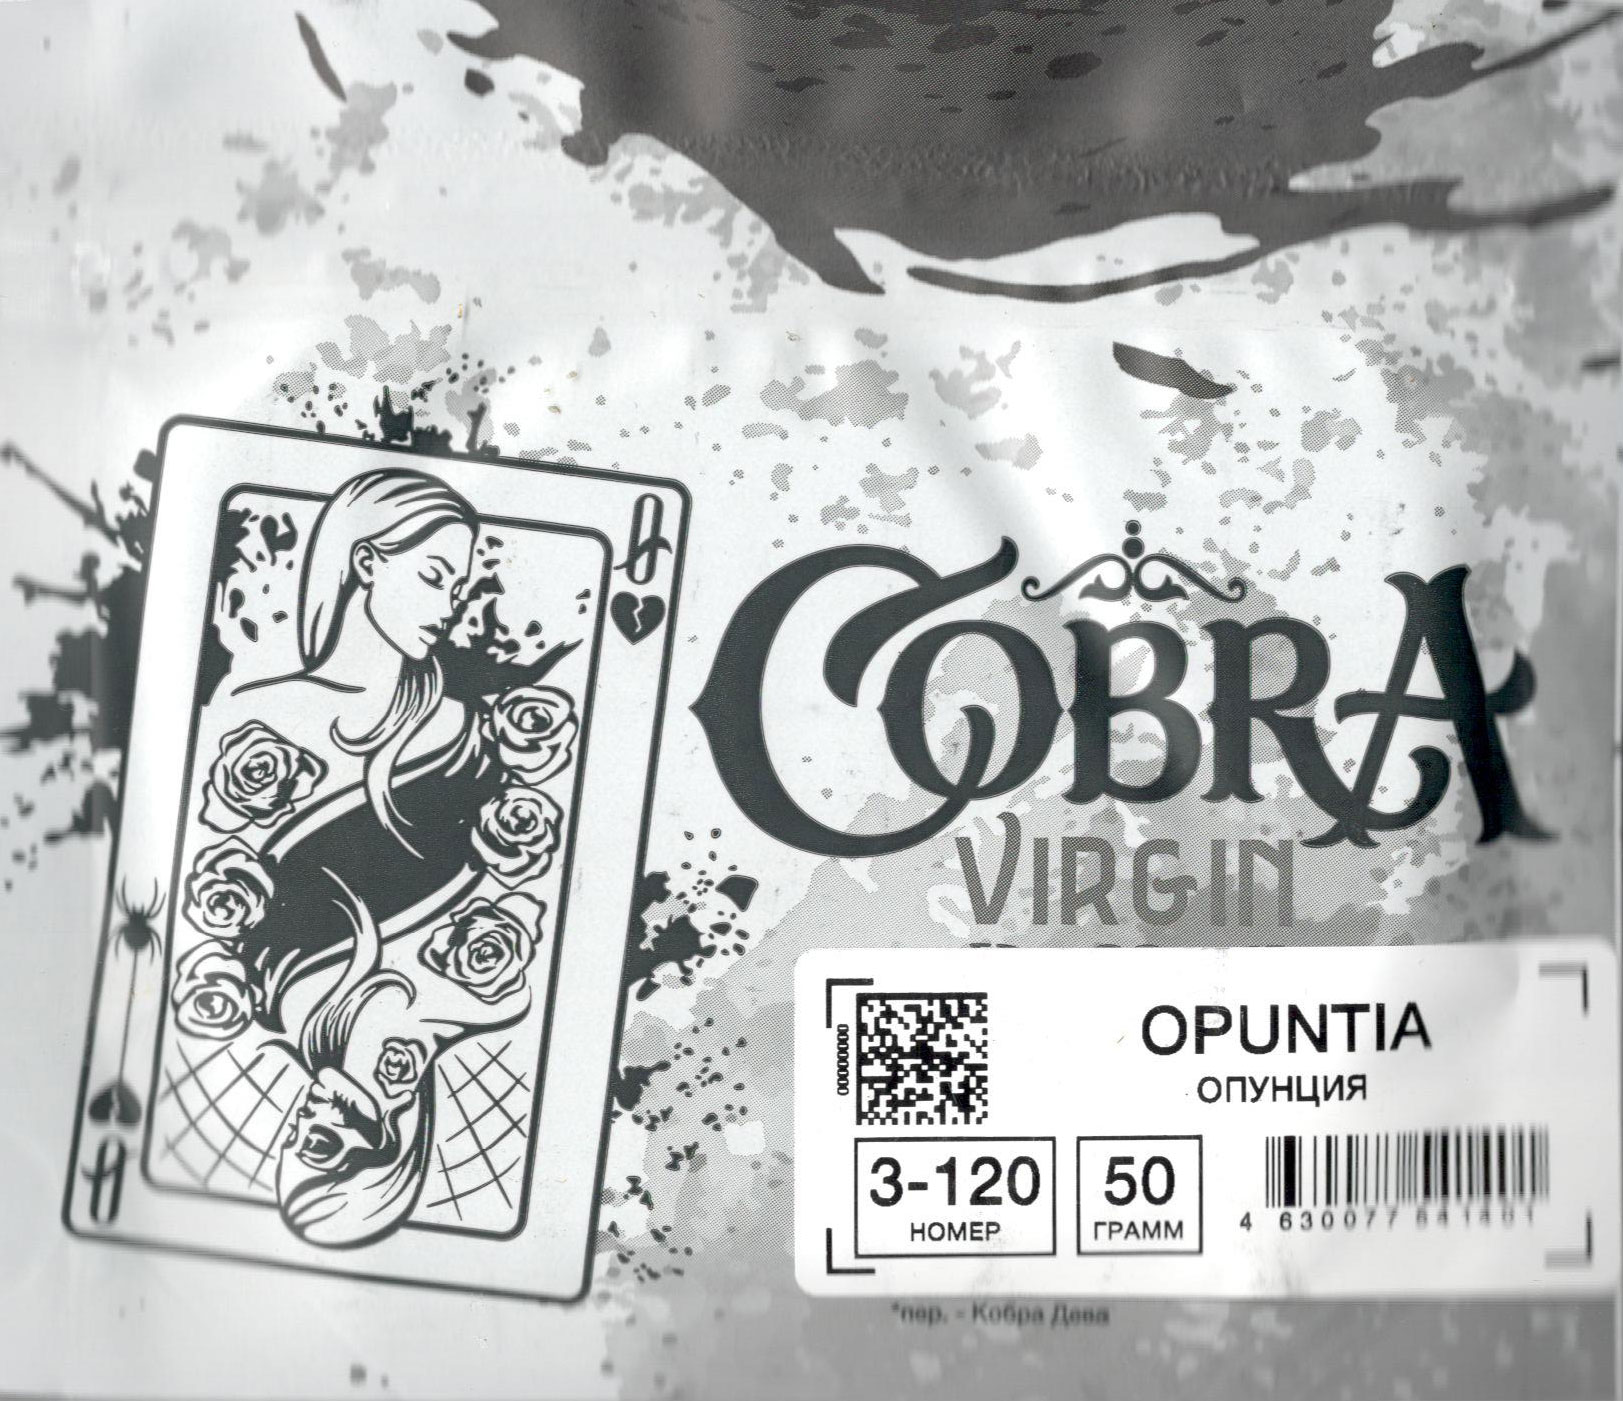 Cobra- Опунция (Opuntia) фото